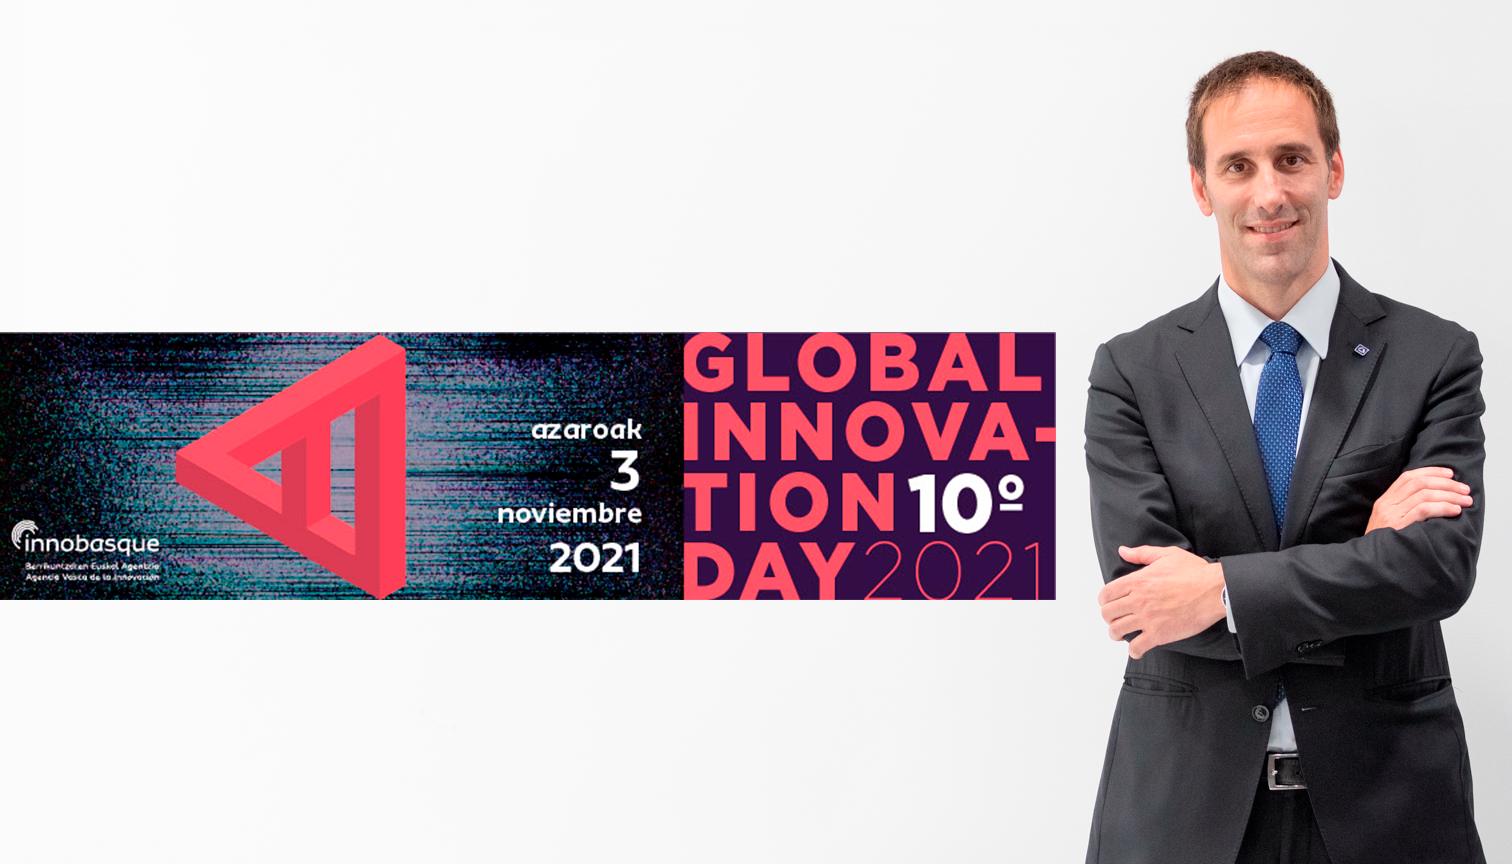 Danobatgroup analiza las tendencias tecnológicas del futuro en el Global Innovation Day 2021